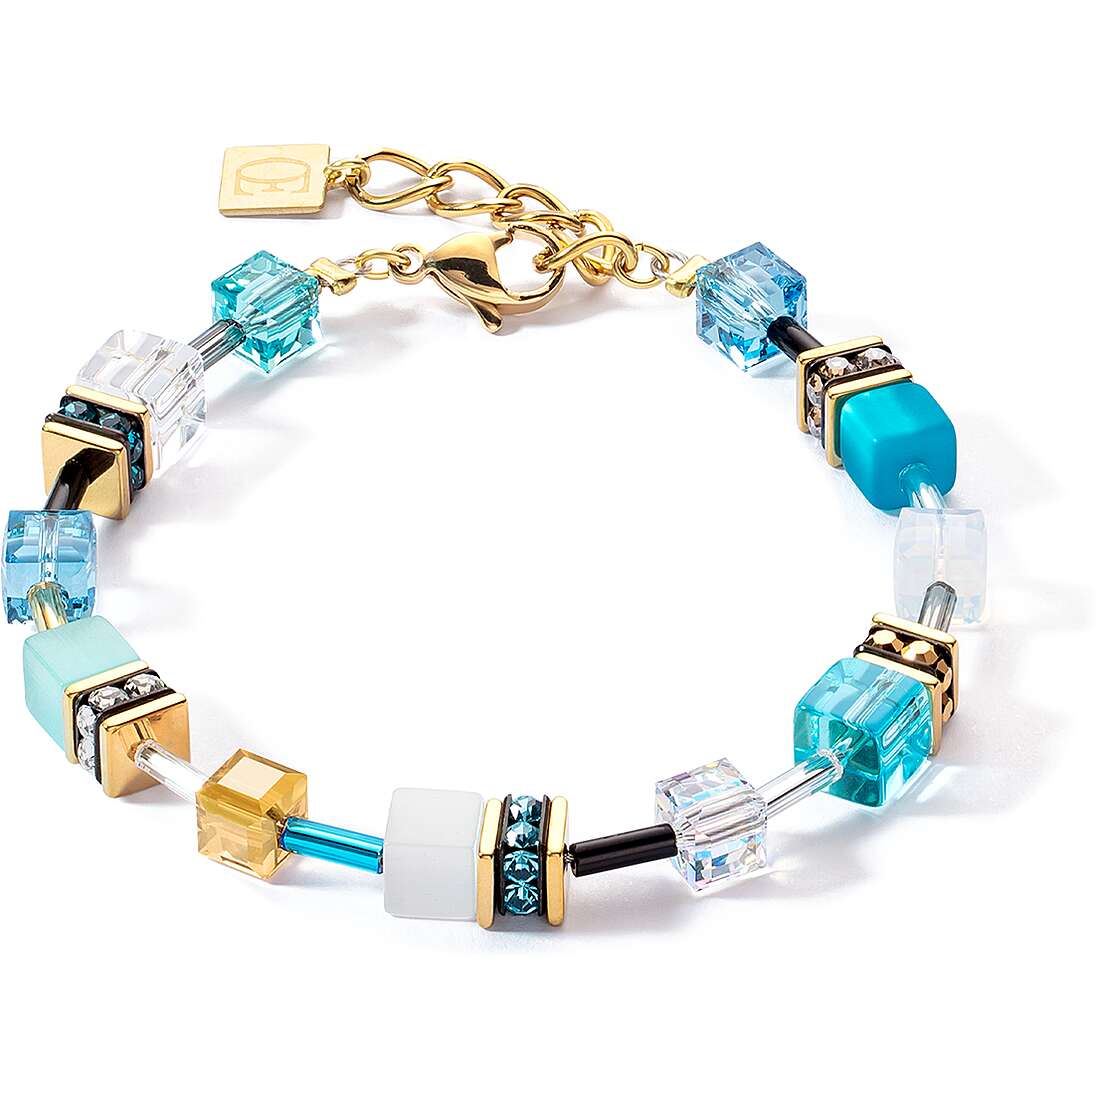 bracelet femme bijoux Coeur De Lion 2838/30-0616